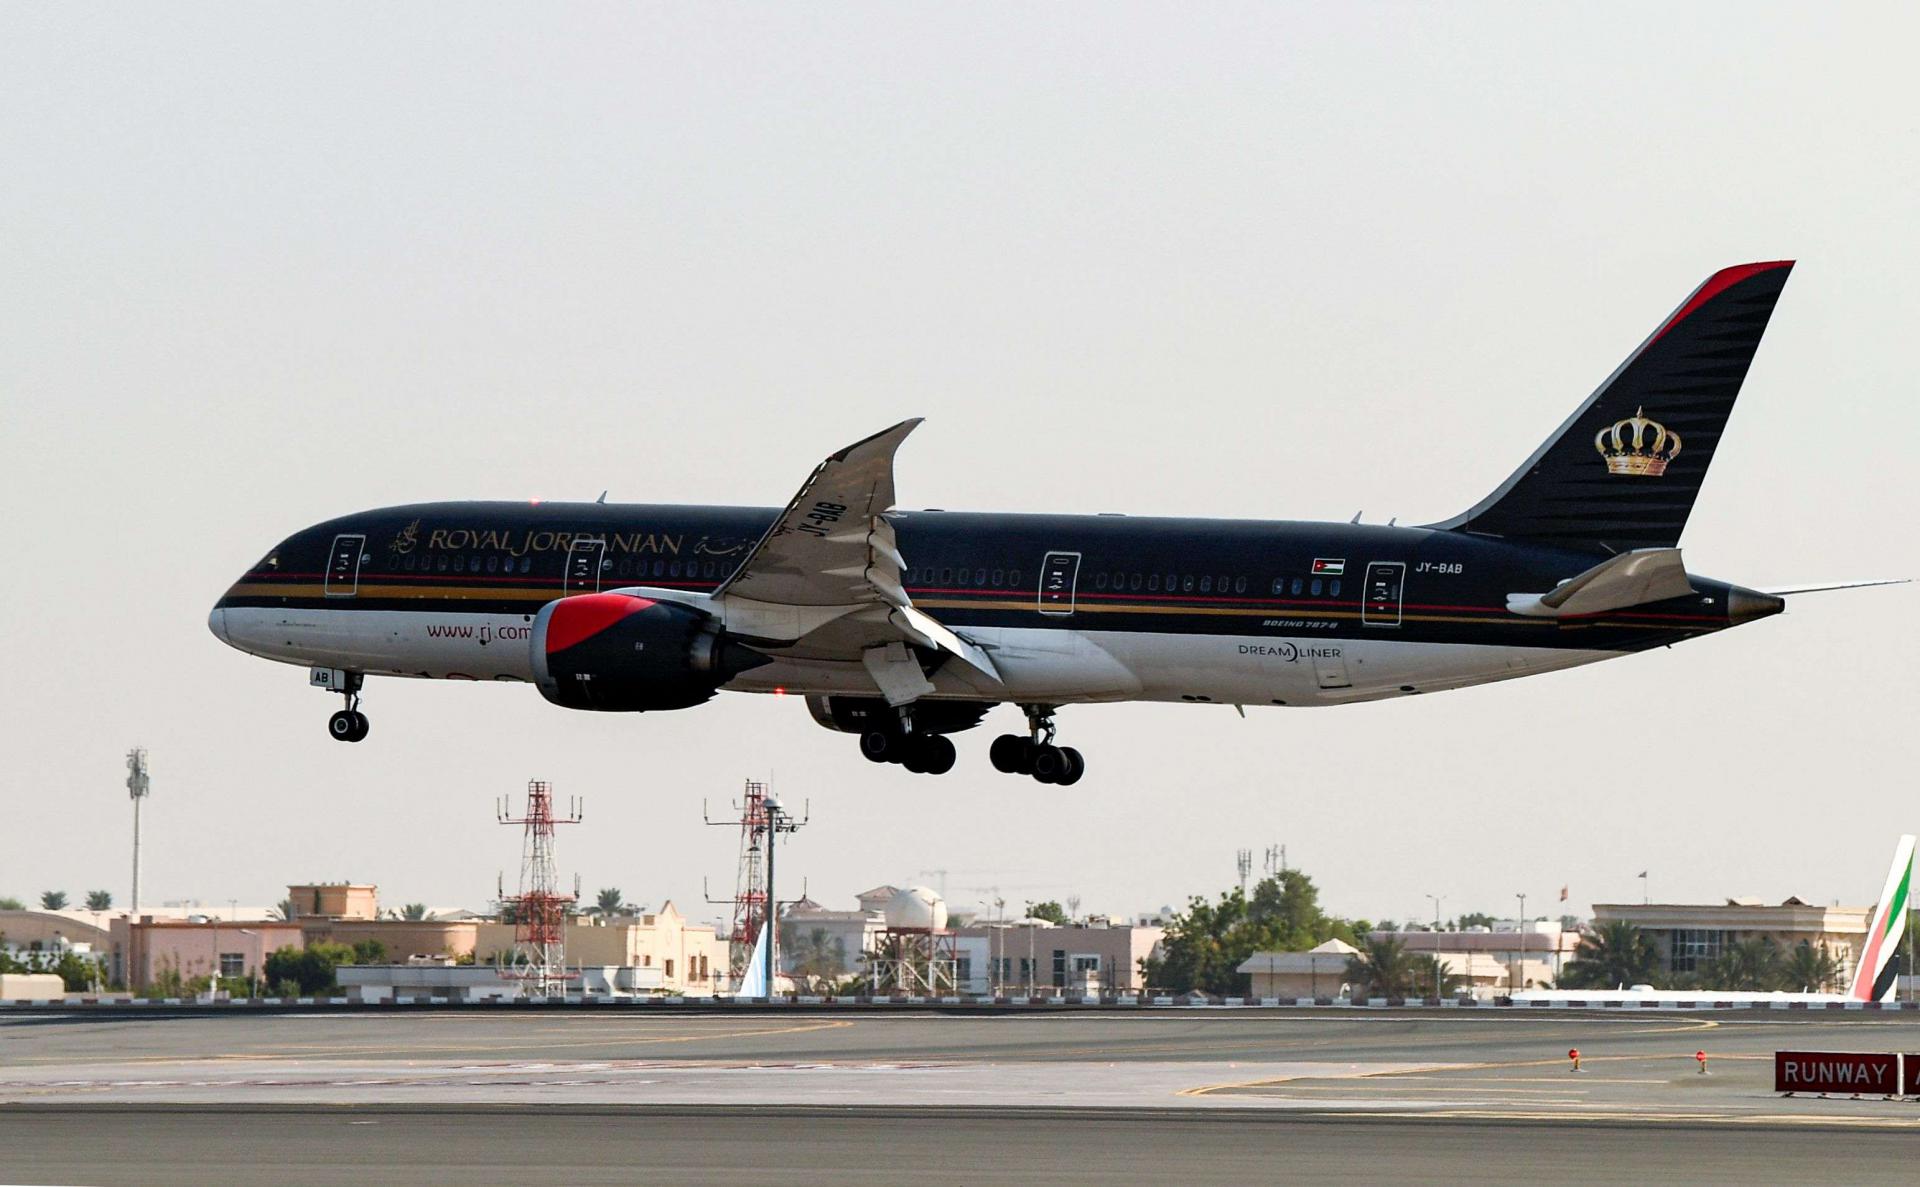 استئناف الرحلات الجوية بين عمان ودمشق يأتي بعد توقف دام 10 سنوات بسبب الحرب السورية